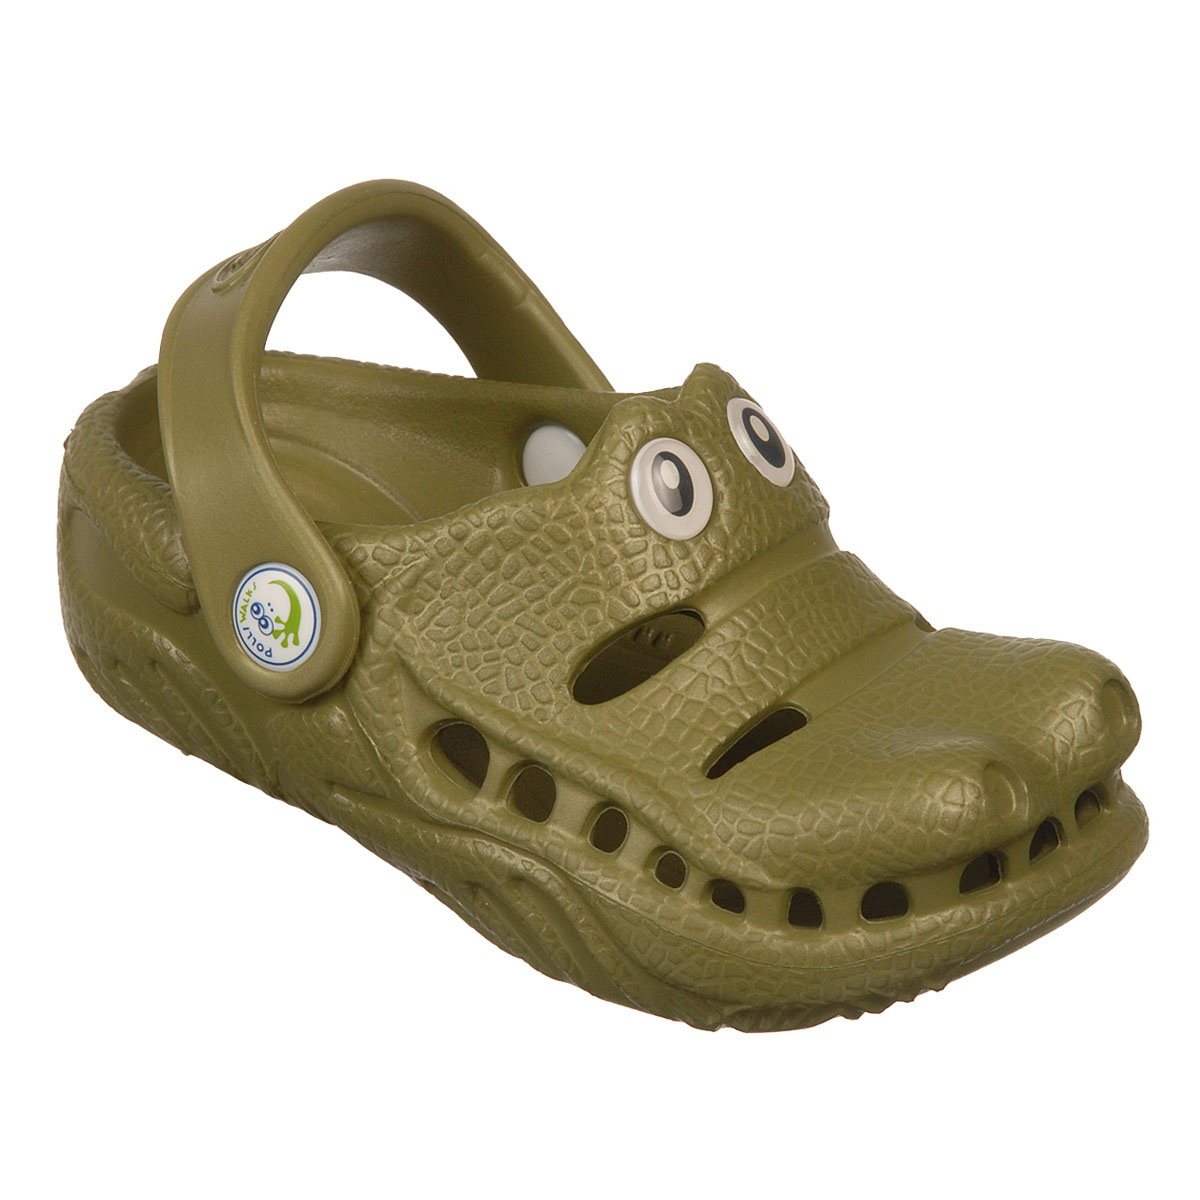 Polliwalks : Toddler shoes Gator ?Green # 7